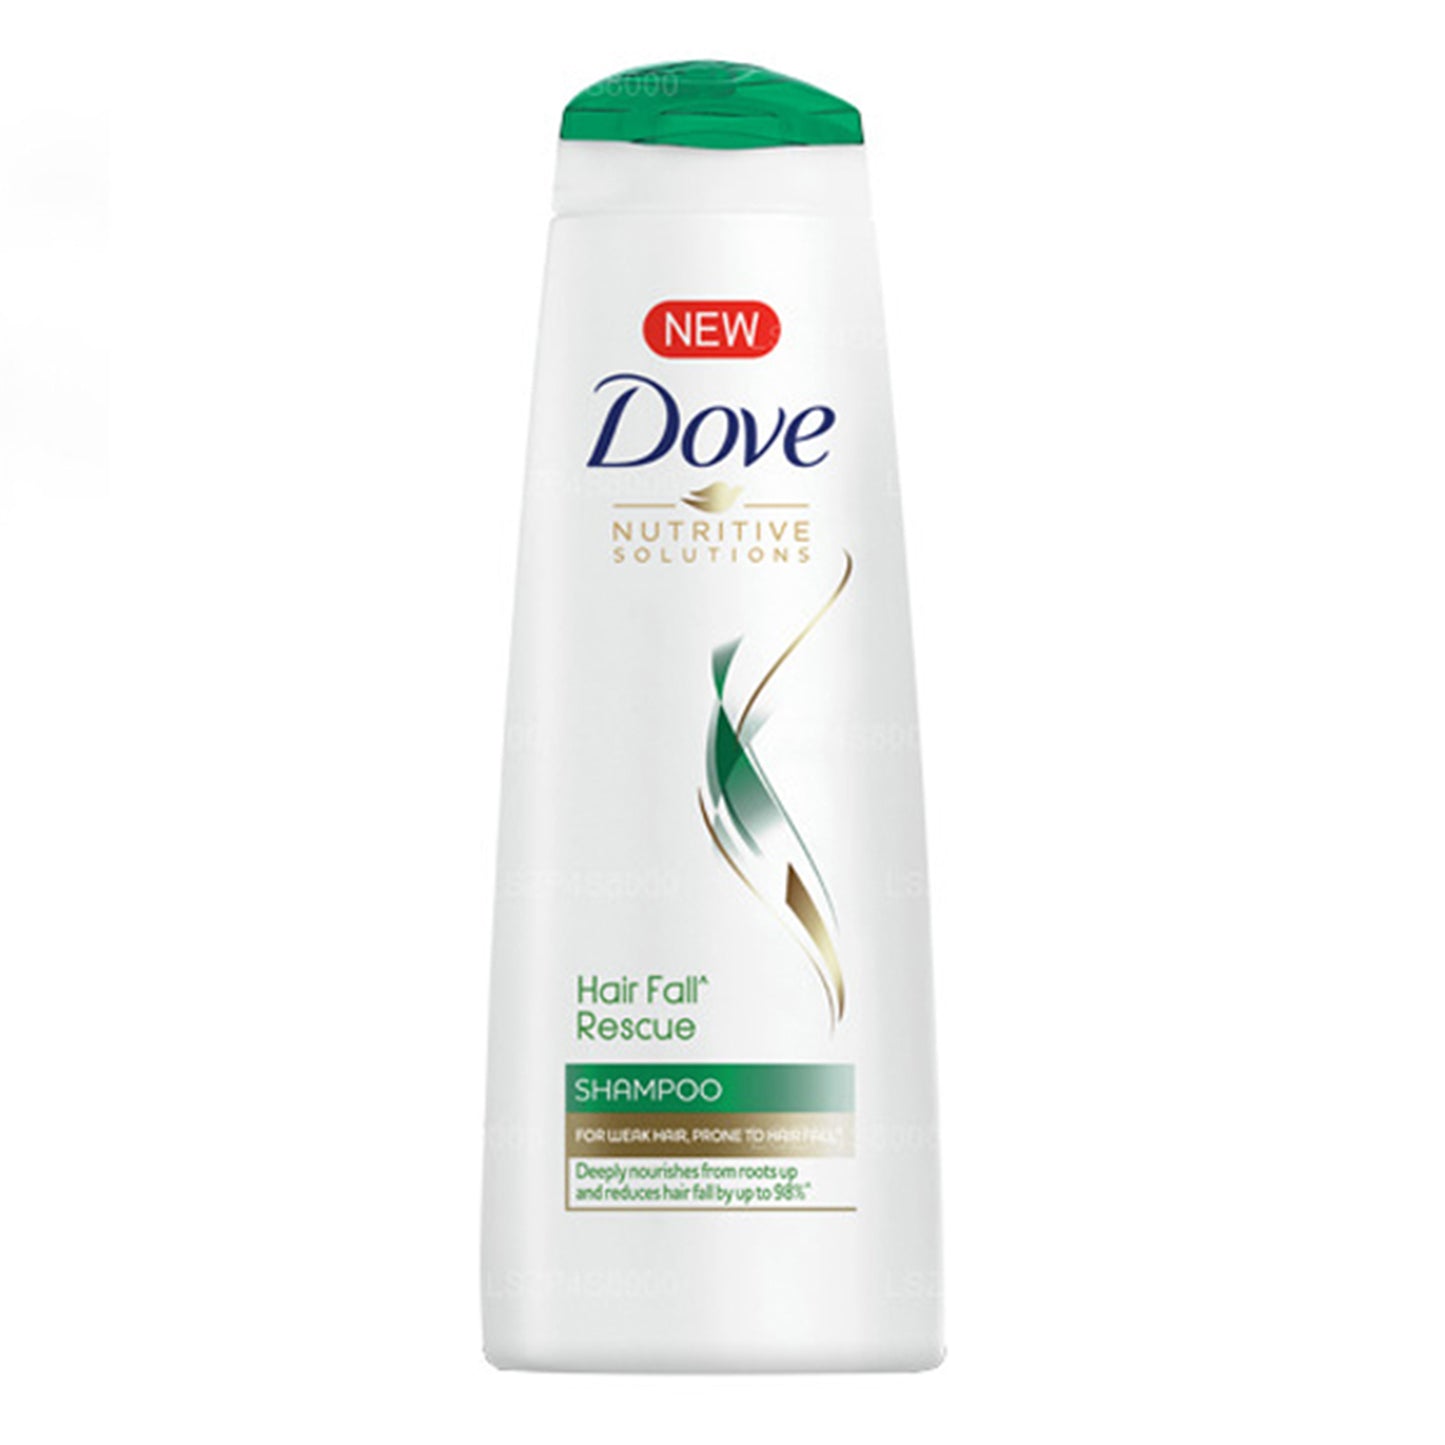 Dove Hair Fall Rescue Shampoo (180ml)